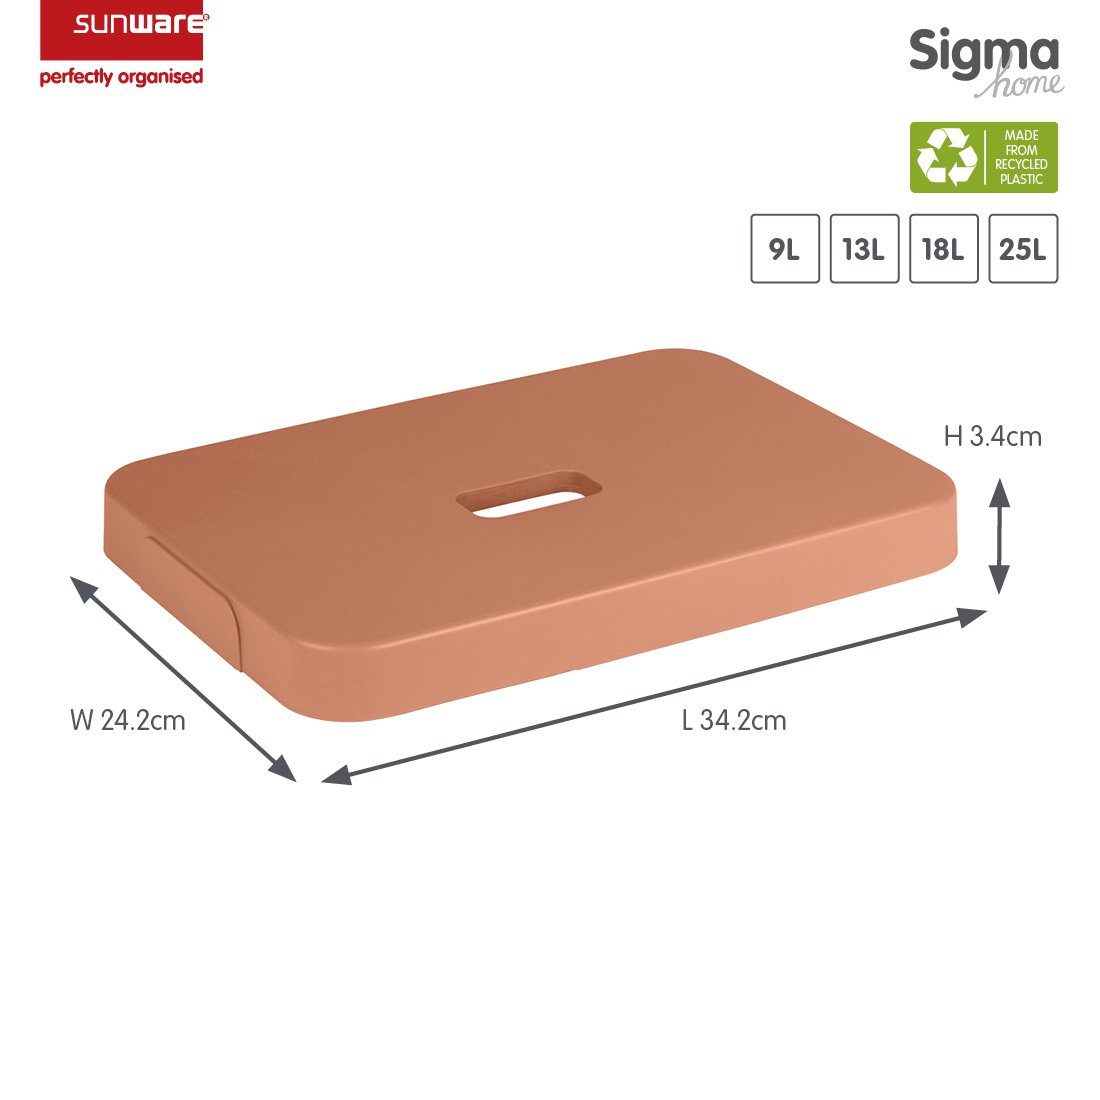 Sigma home Deckel terra für Aufbewahrungsbox 9L, 13L, 18L und 25L